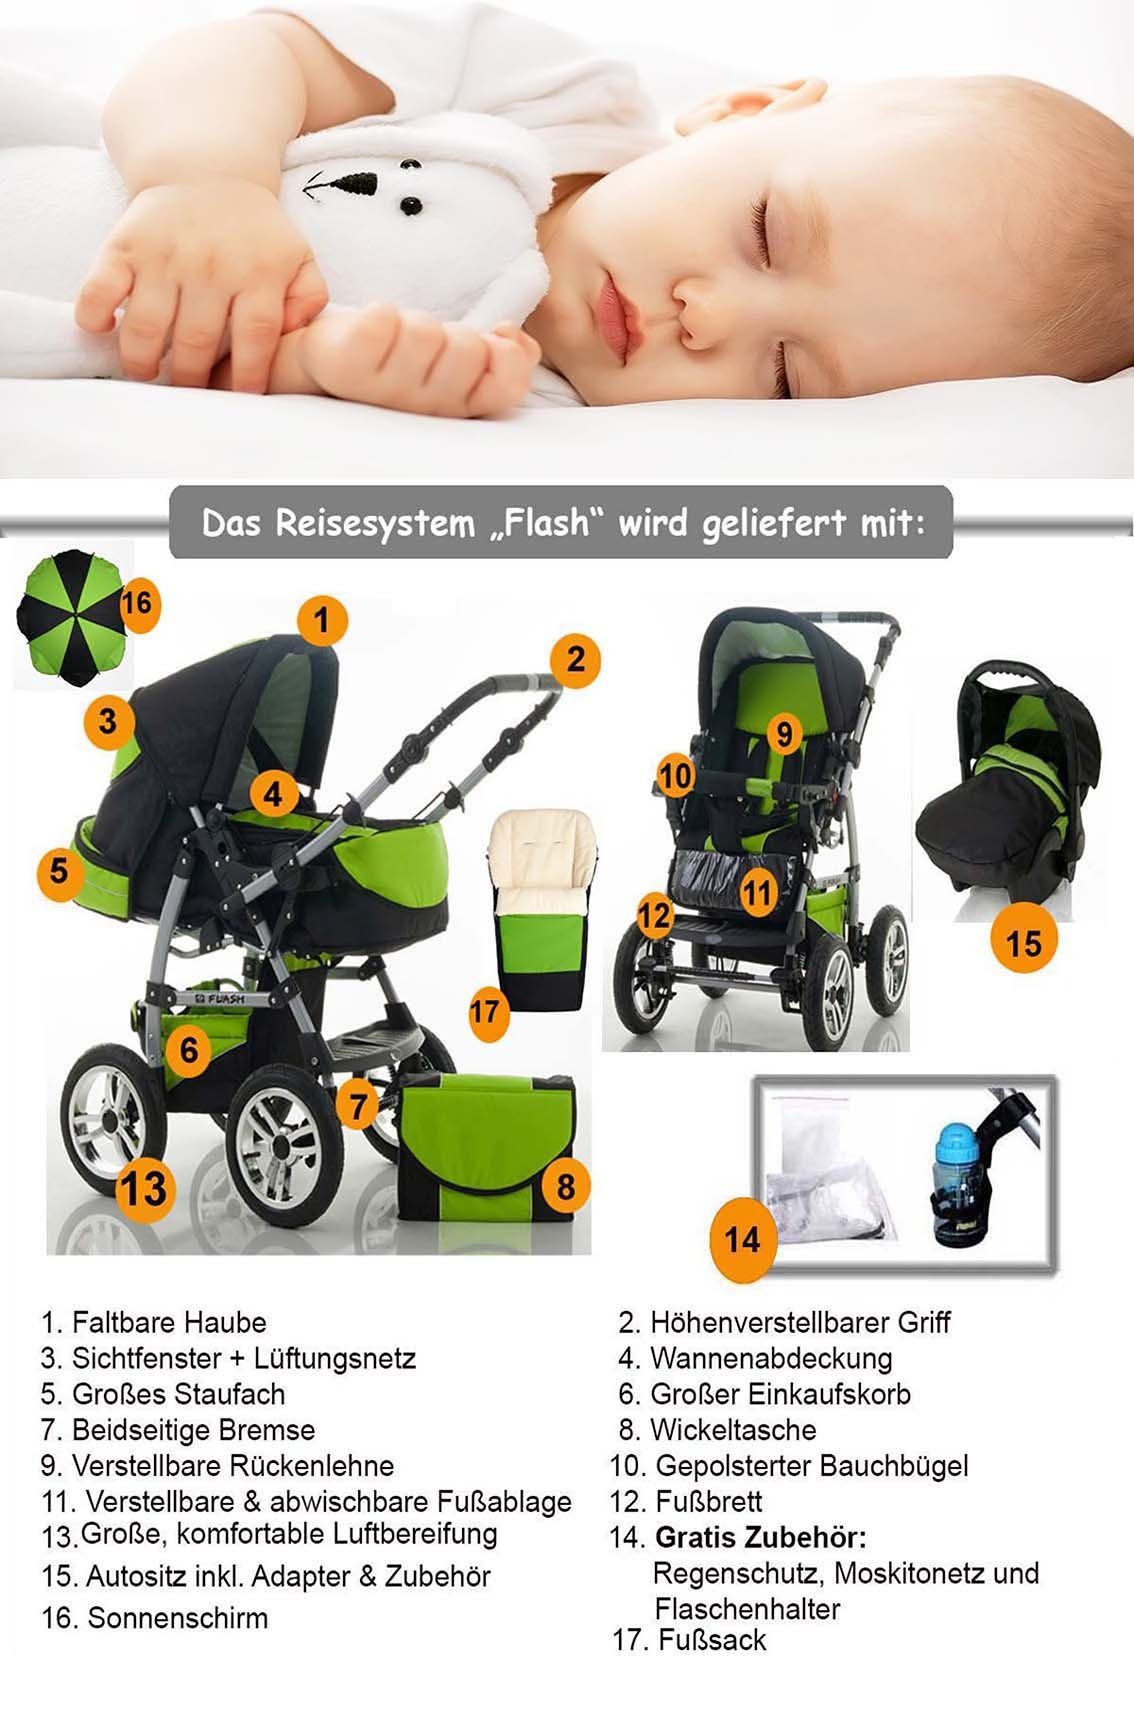 babies-on-wheels Kombi-Kinderwagen 5 18 - Farben Flash in 17 Anthrazit-Orange - Autositz Teile inkl. Kinderwagen-Set in 1